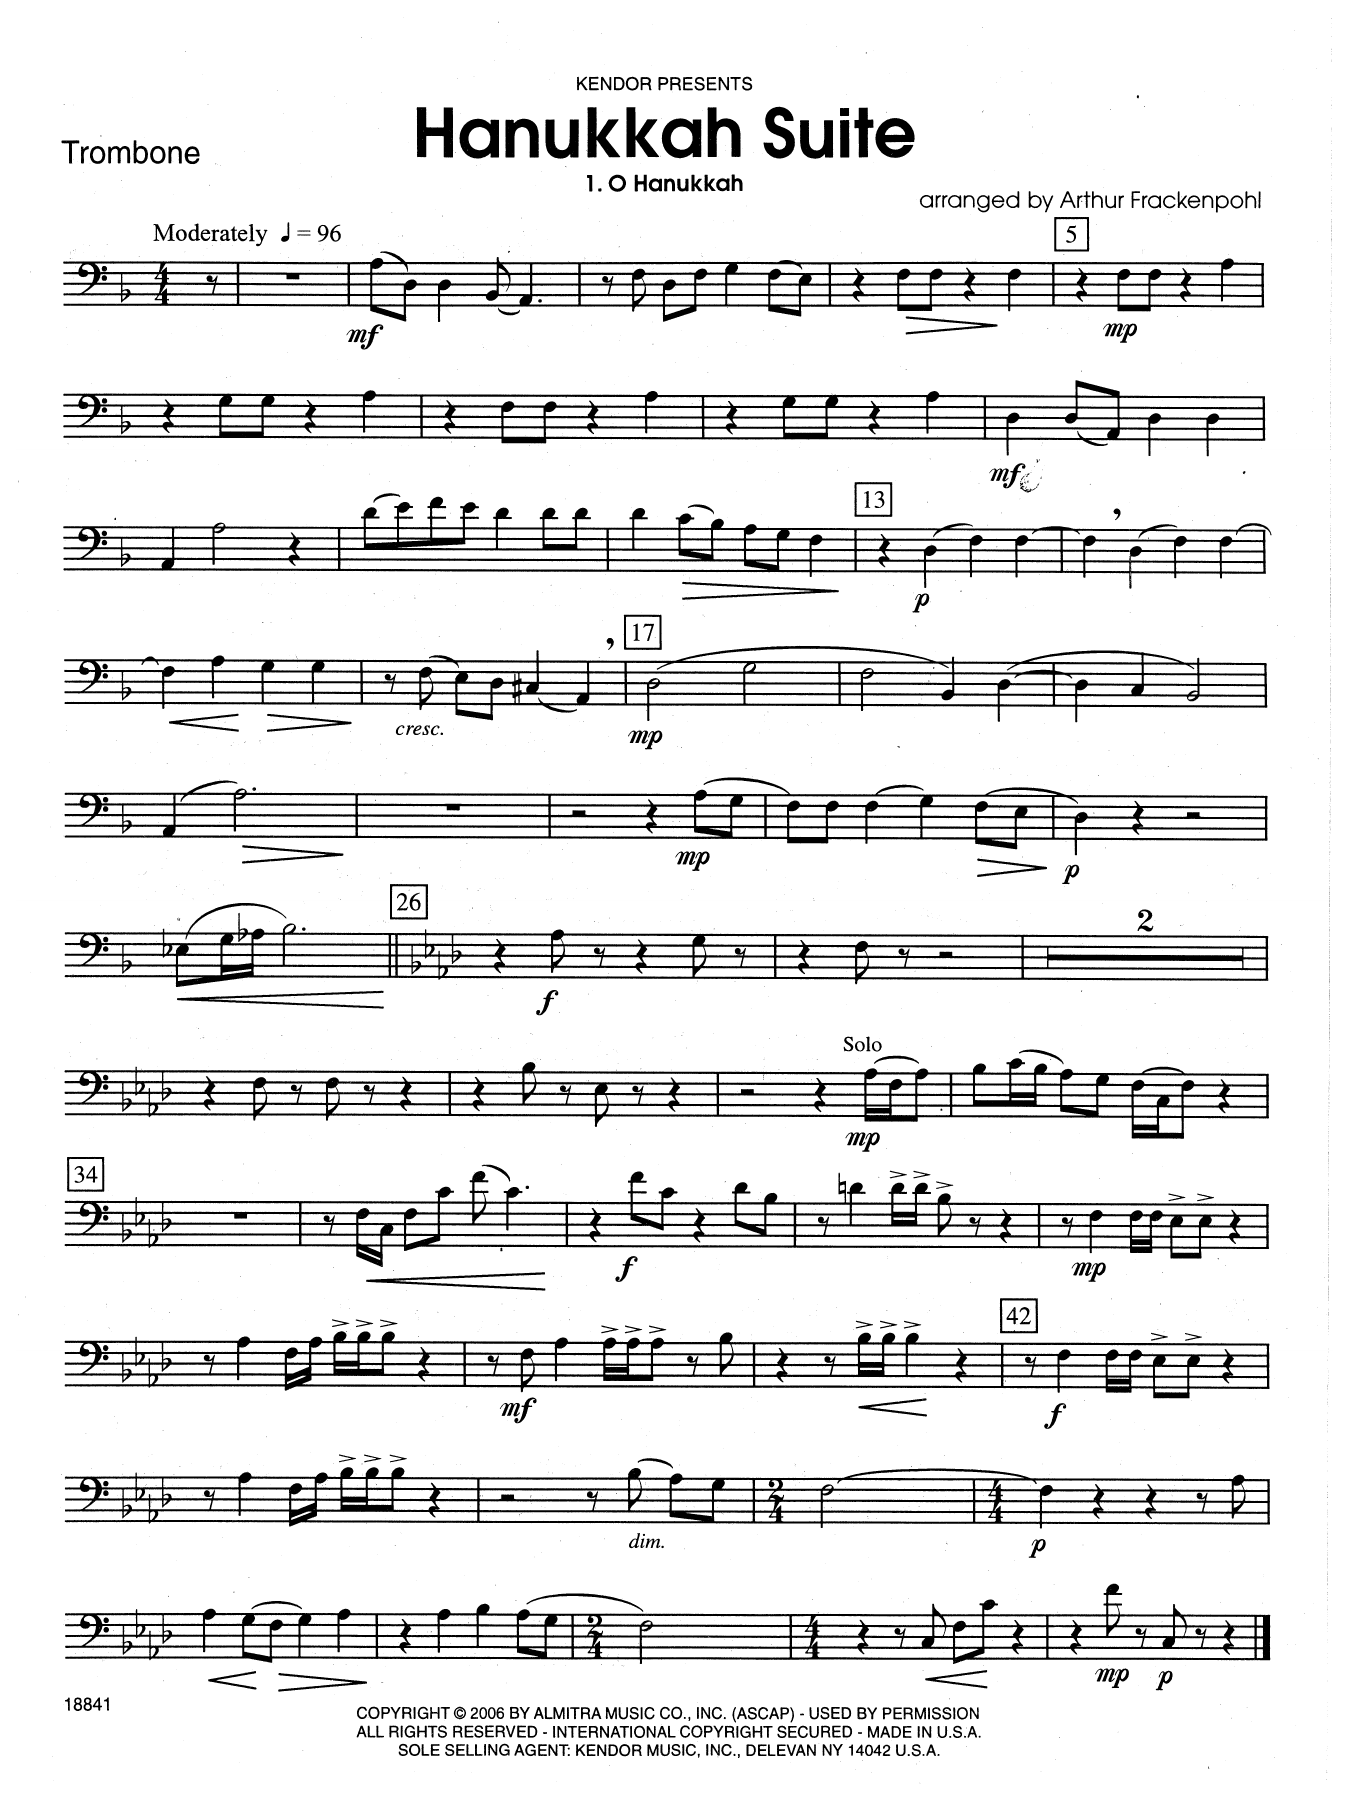 Download Arthur Frackenpohl Hanukkah Suite - Trombone Sheet Music